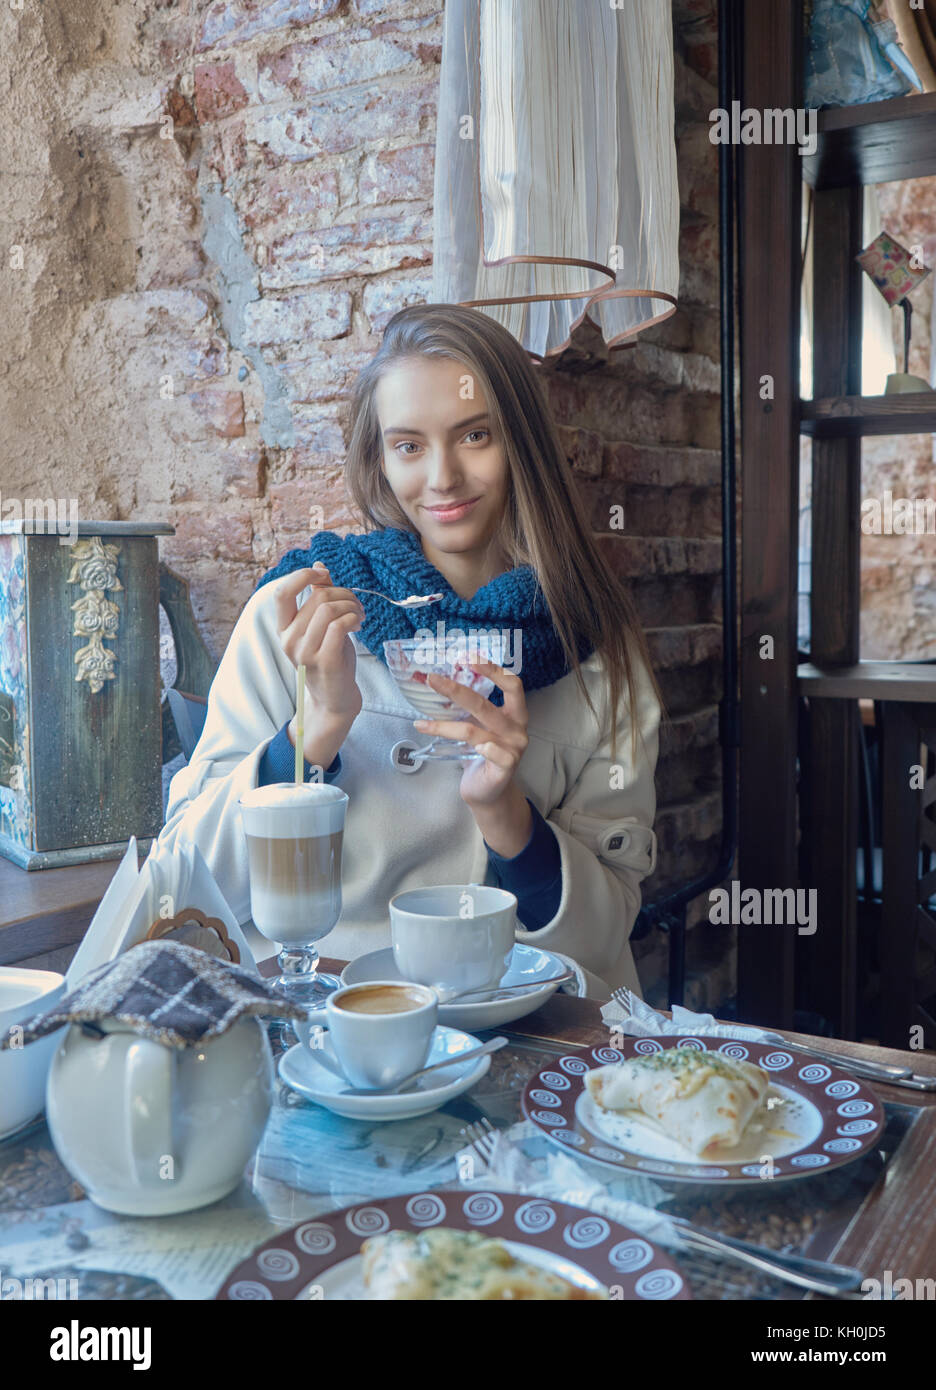 Un affascinante giovane ragazza dai capelli scuri è a riposo in un caffè accogliente. Il caffè è sul suo tavolo. La ragazza gode il gusto di gelato. Foto Stock